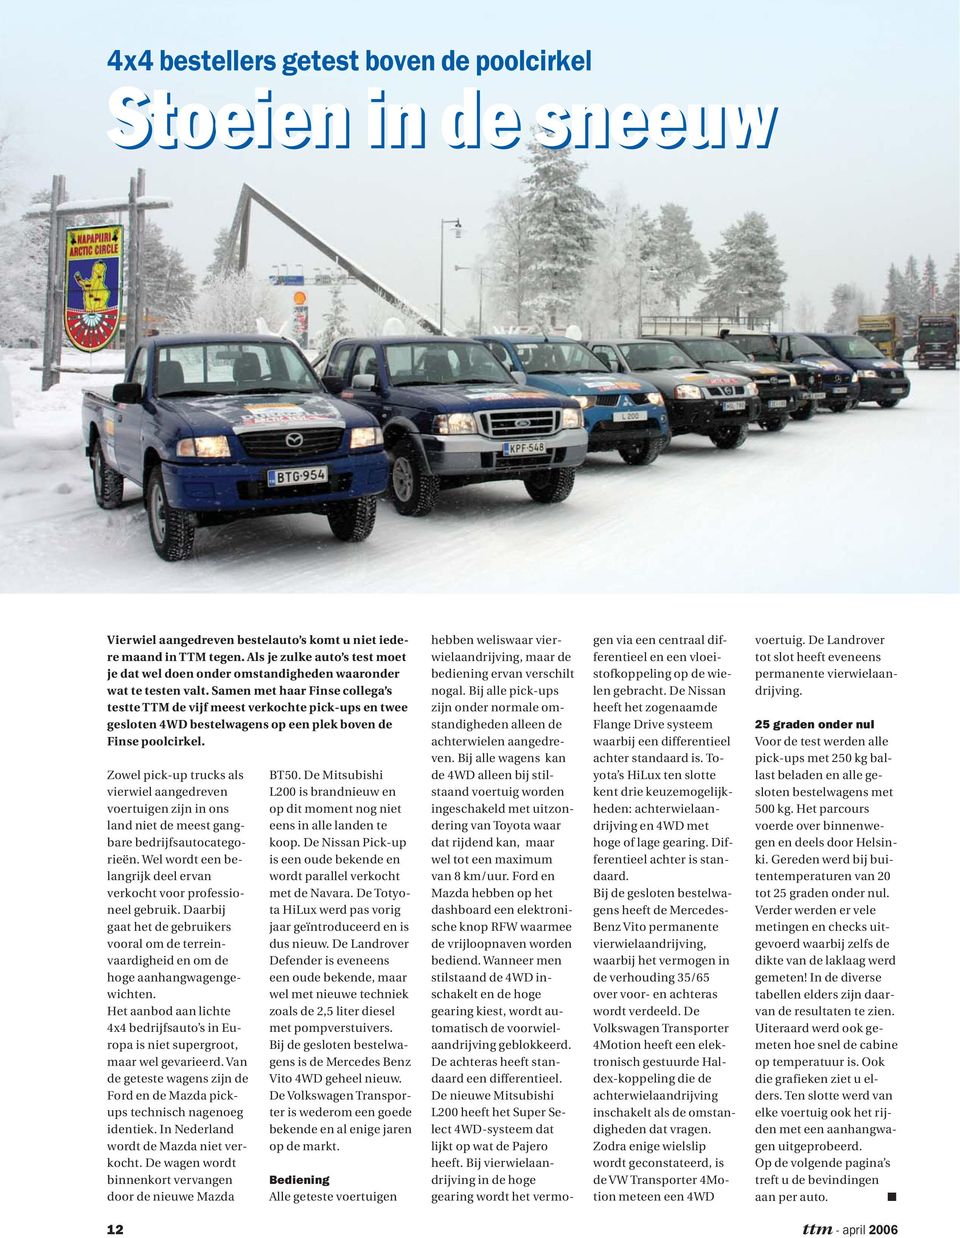 Samen met haar Finse collega s testte TTM de vijf meest verkochte pick-ups en twee gesloten 4WD bestelwagens op een plek boven de Finse poolcirkel.